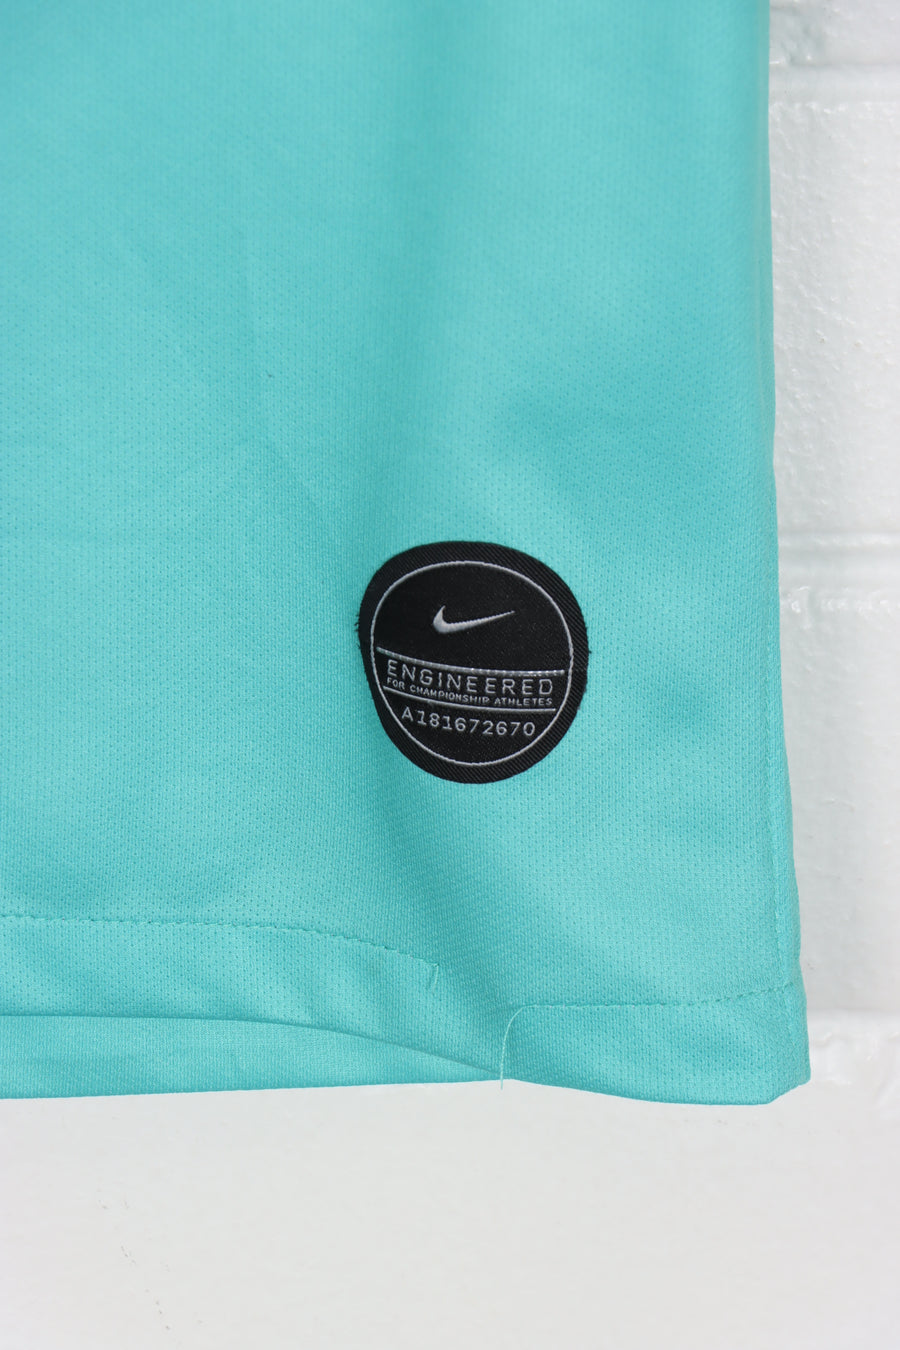 NIKE Embroidered Swoosh Club America Mint Dri-Fit Jersey (L)